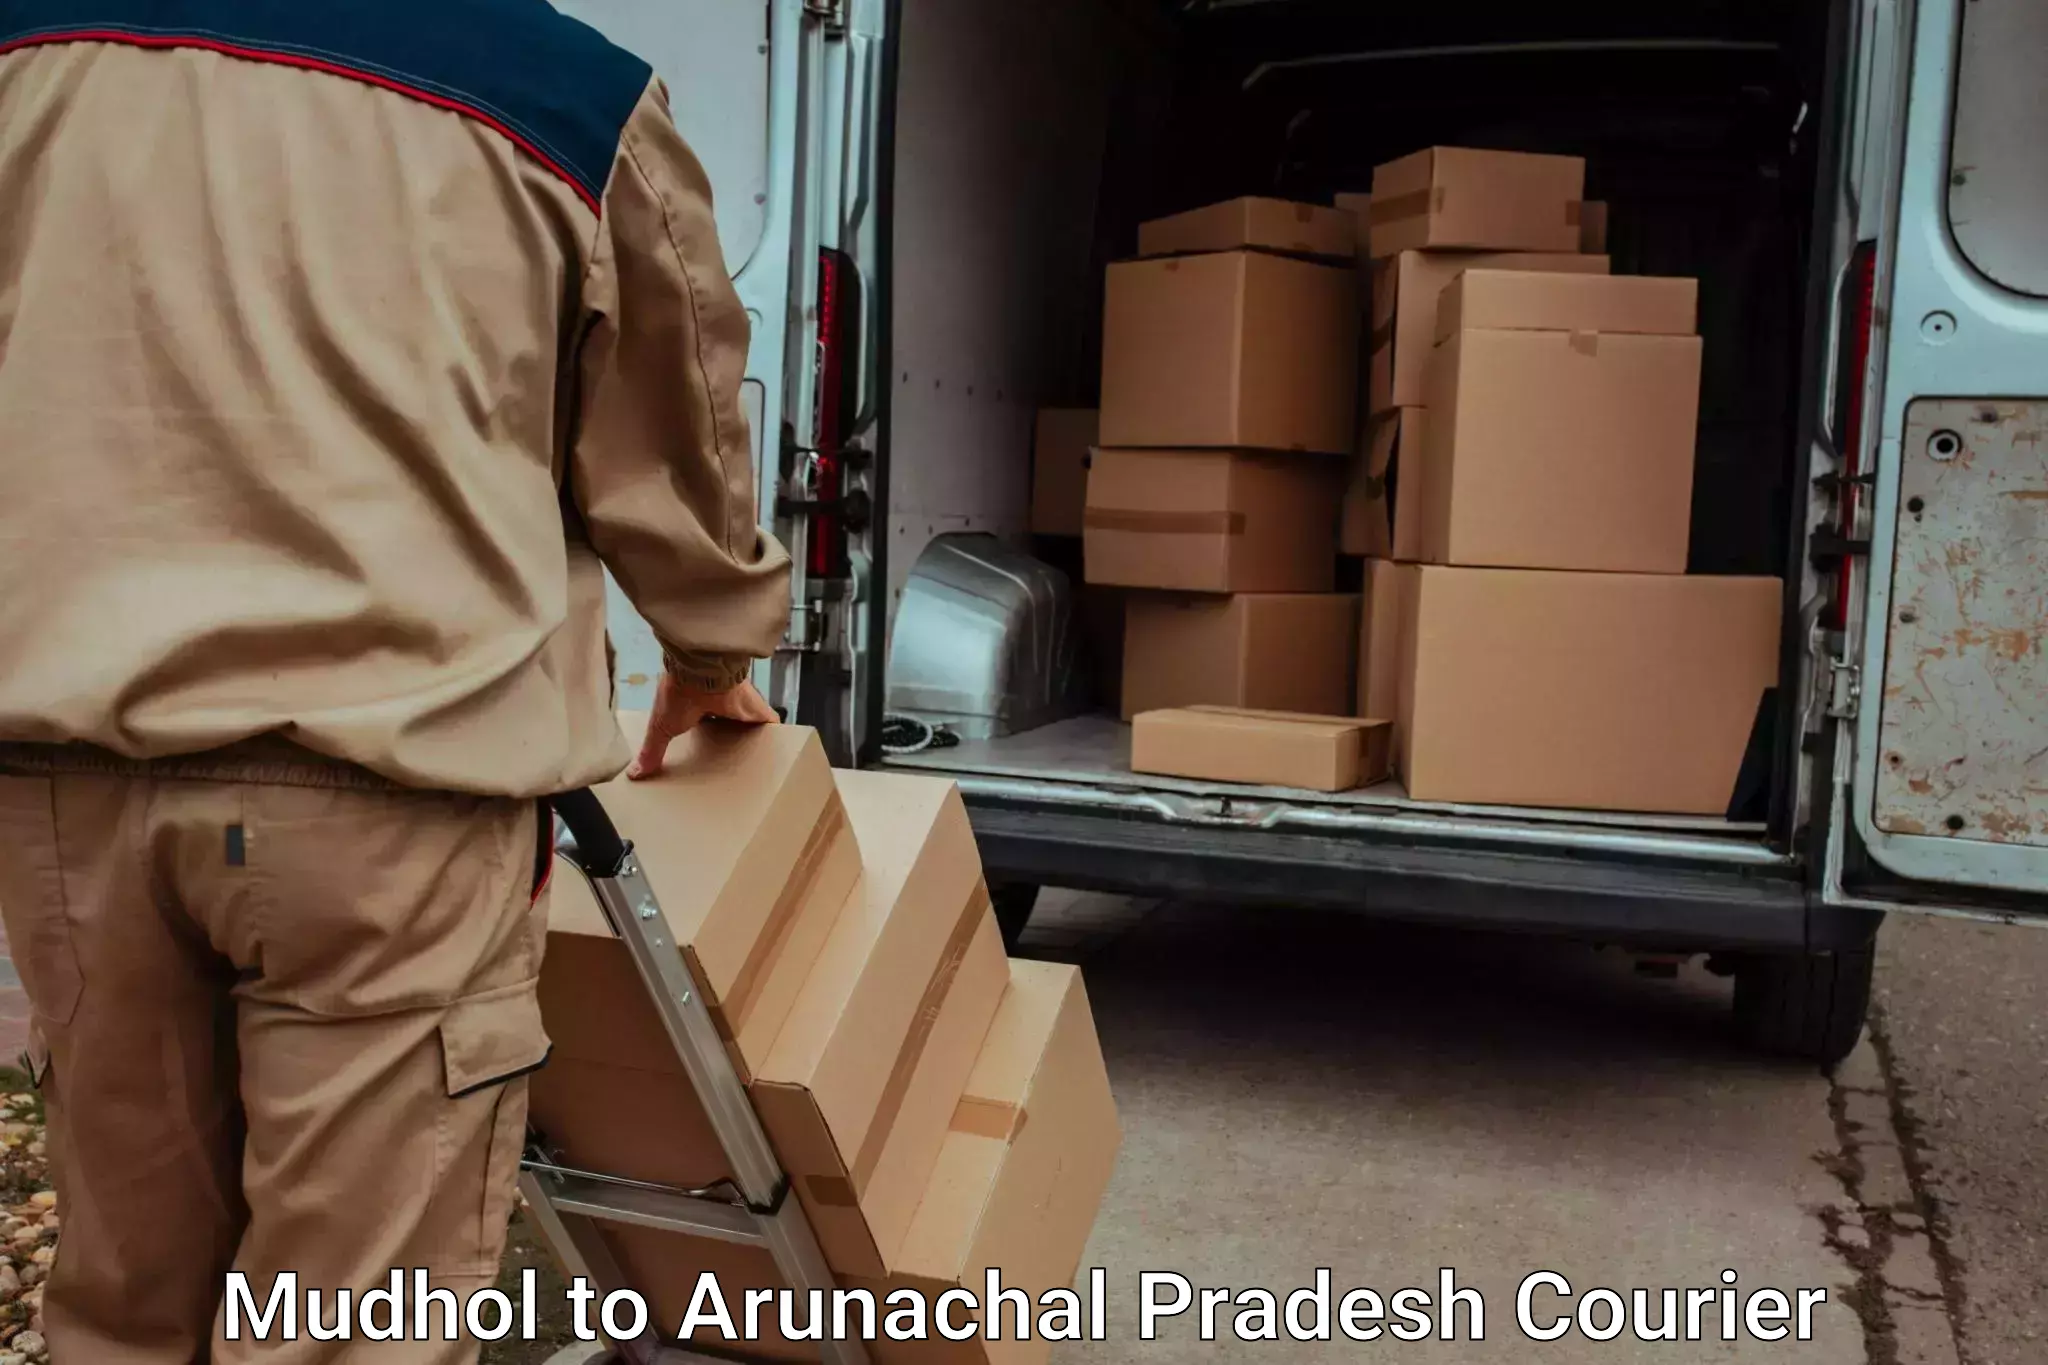 Furniture transport services Mudhol to Nirjuli